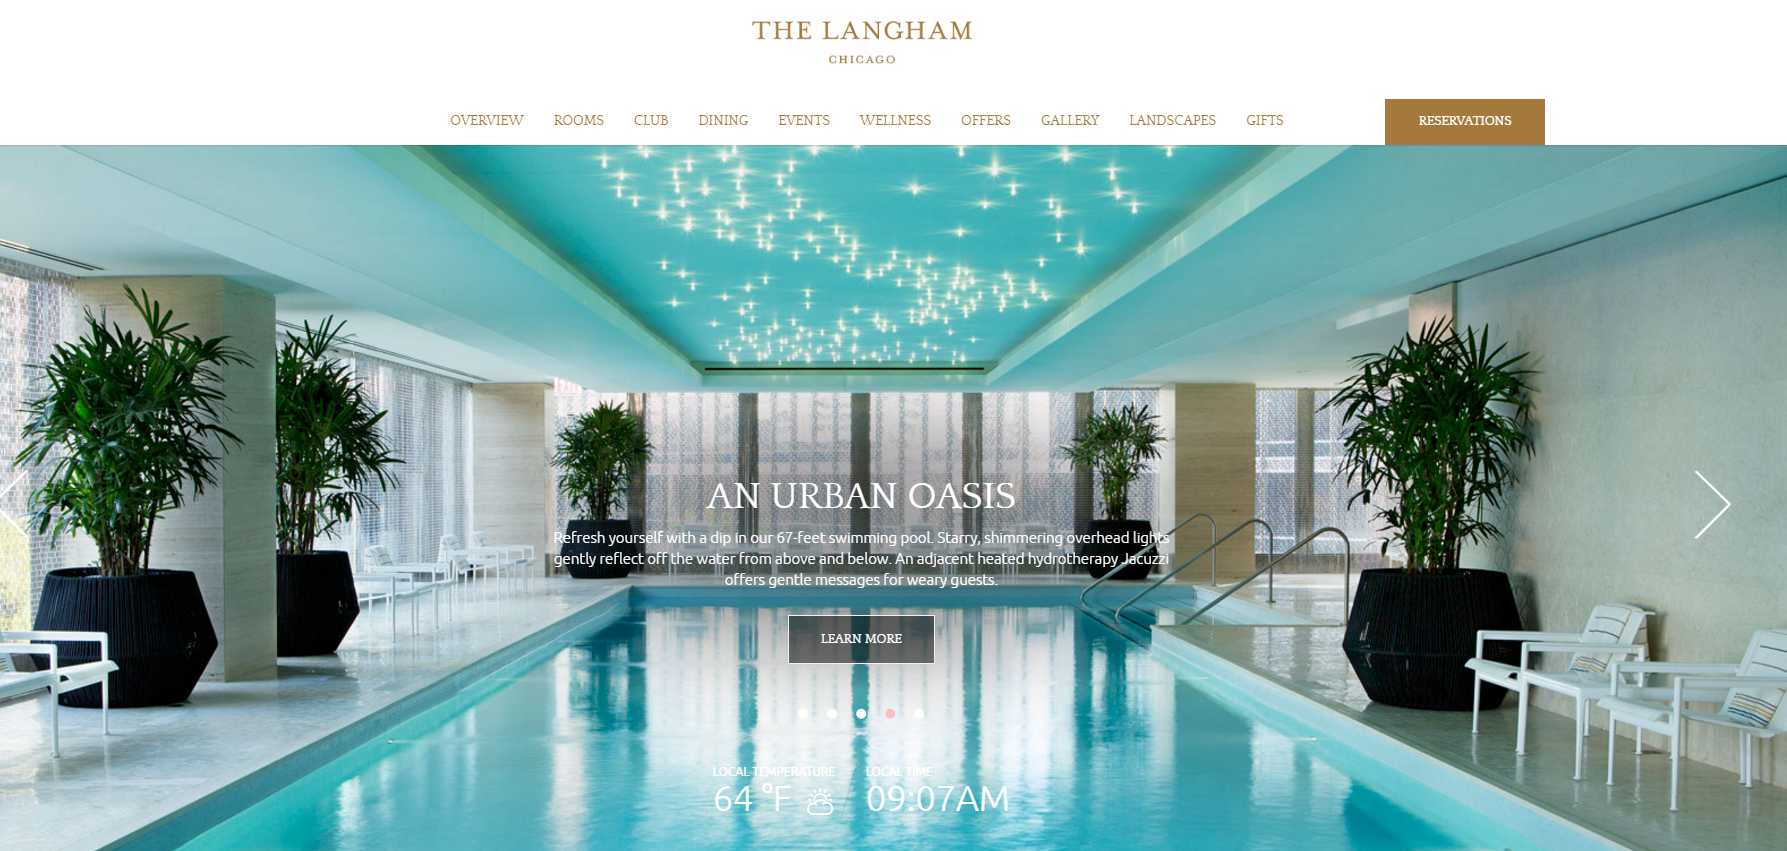 The Langham hotel website homepage